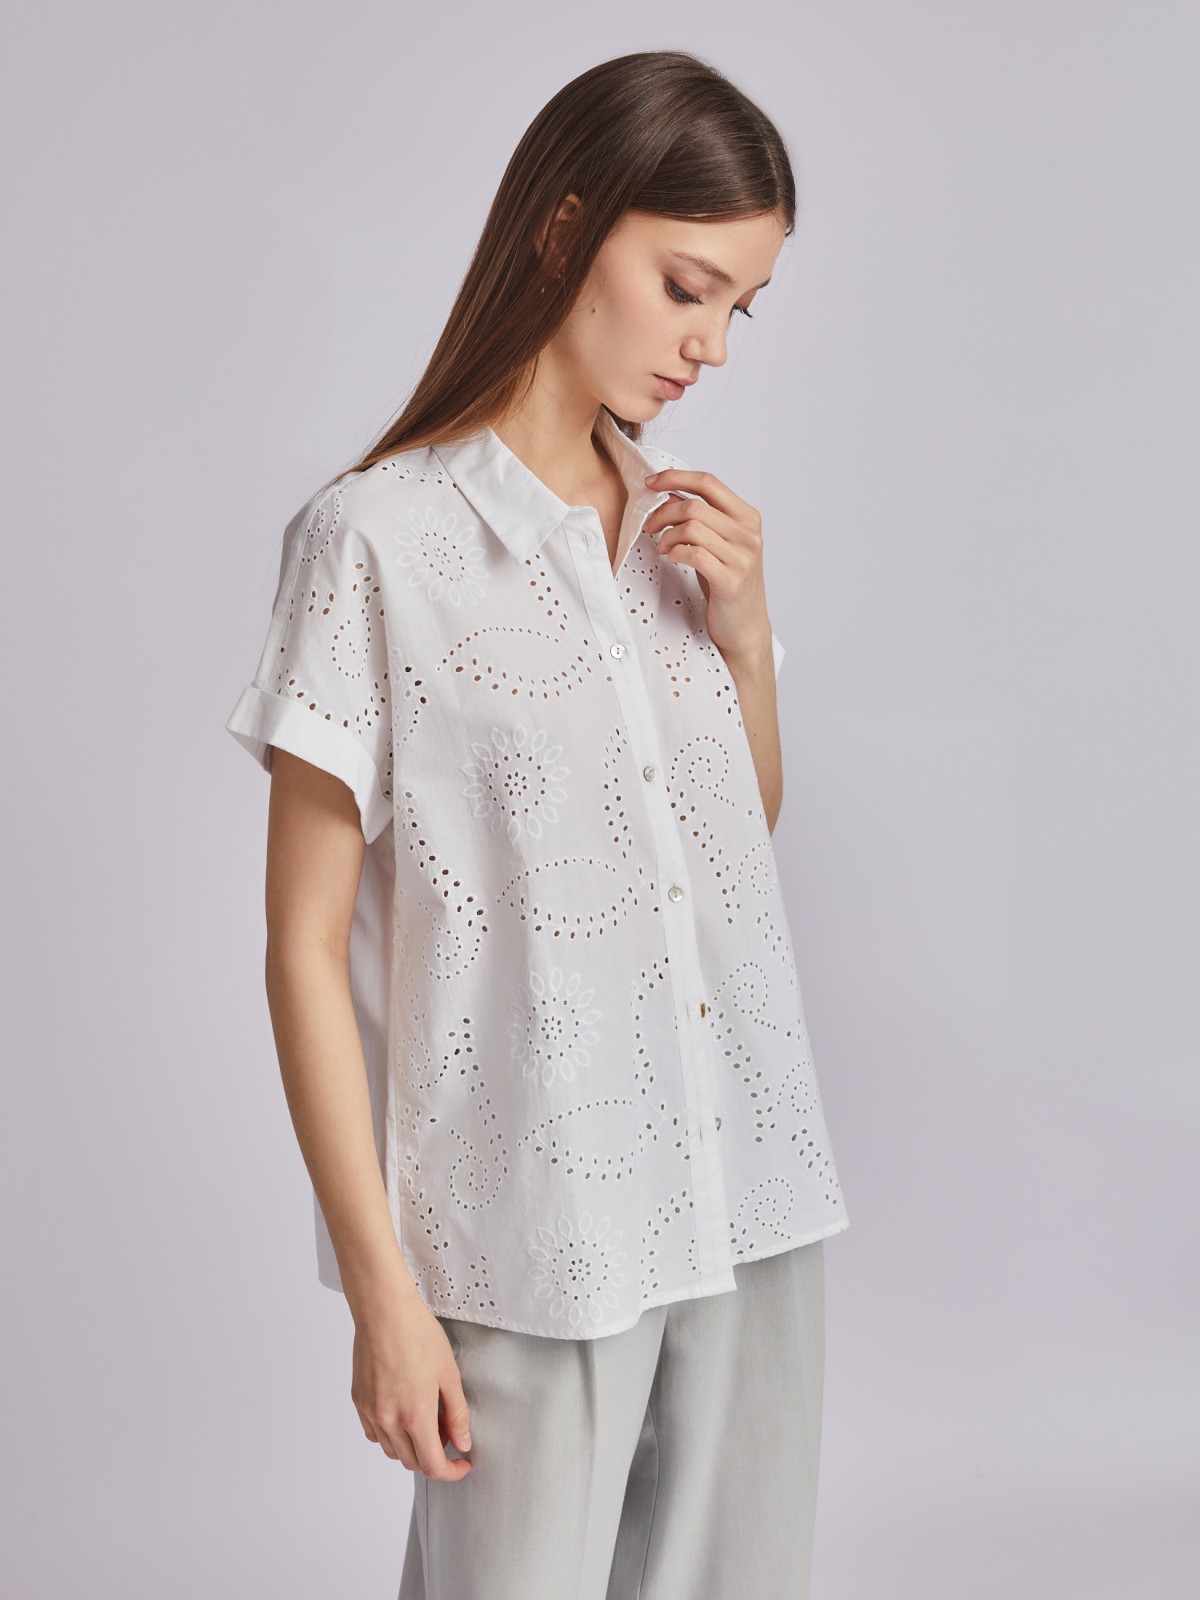 Рубашка из хлопка с коротким рукавом и ажурной вышивкой zolla 023251259023, цвет белый, размер XS - фото 3